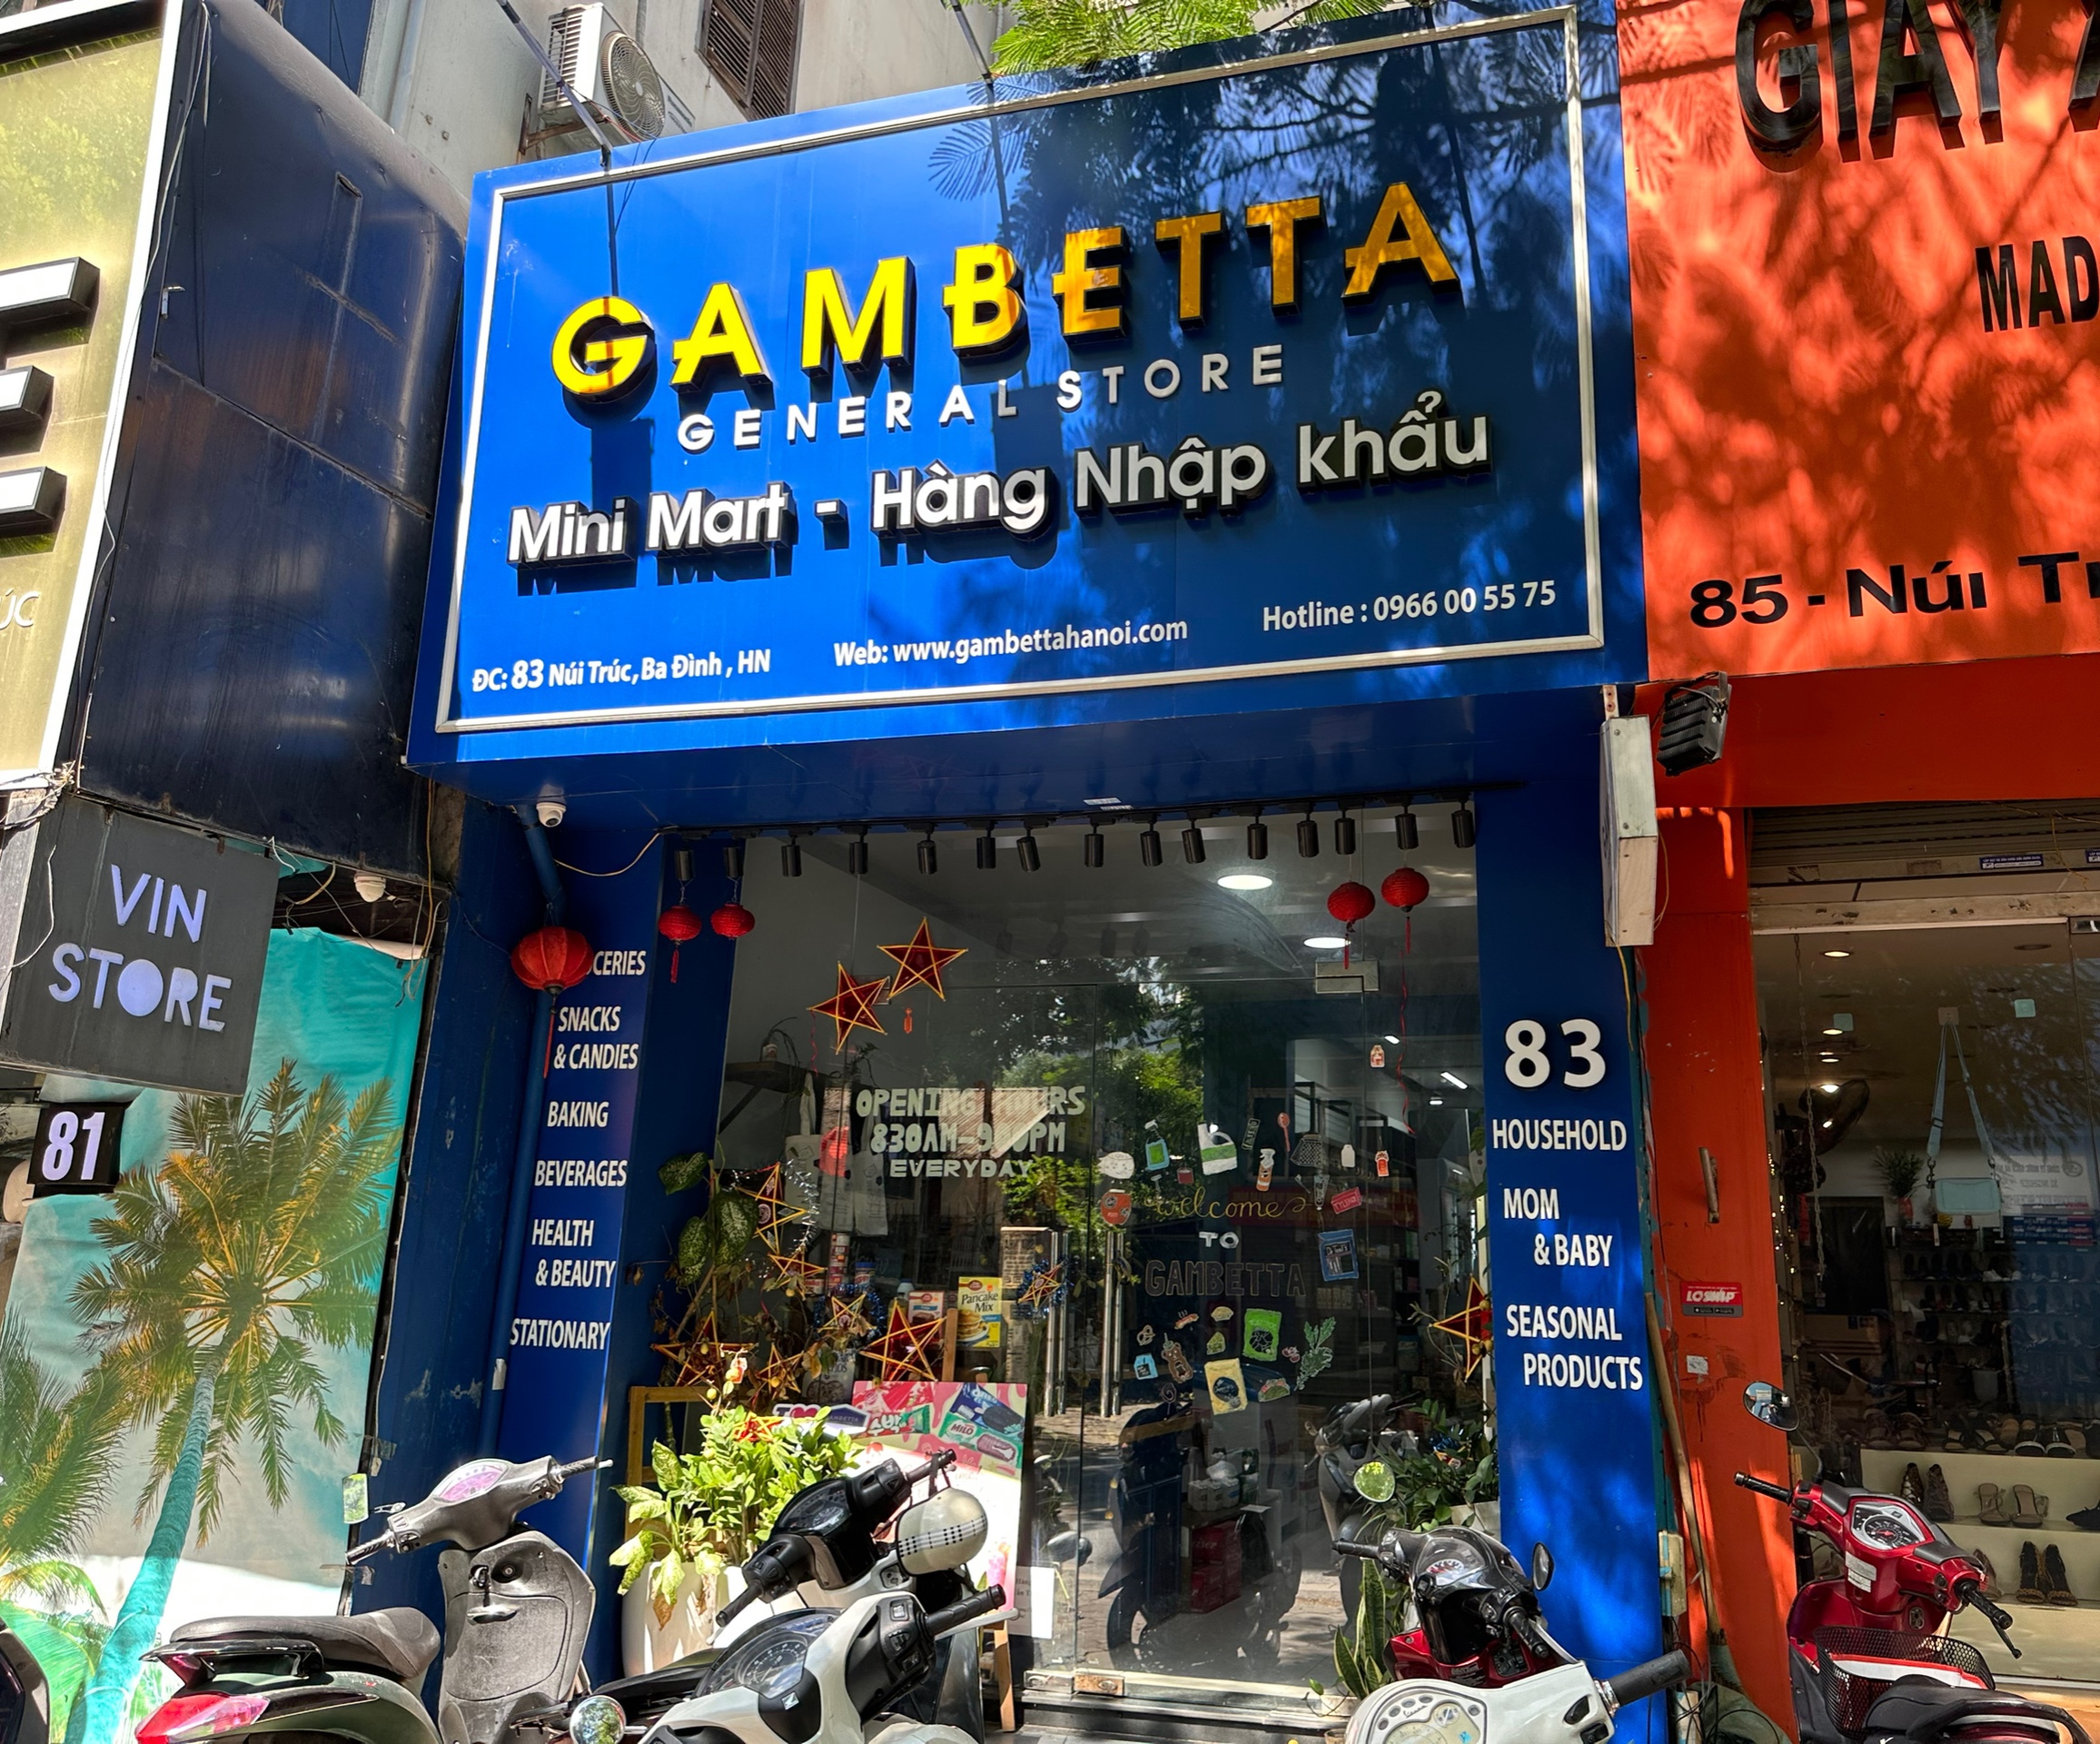 Hà Nội: Nghi vấn siêu thị GAMBETTA kinh doanh hàng hoá không rõ nguồn gốc xuất xứ